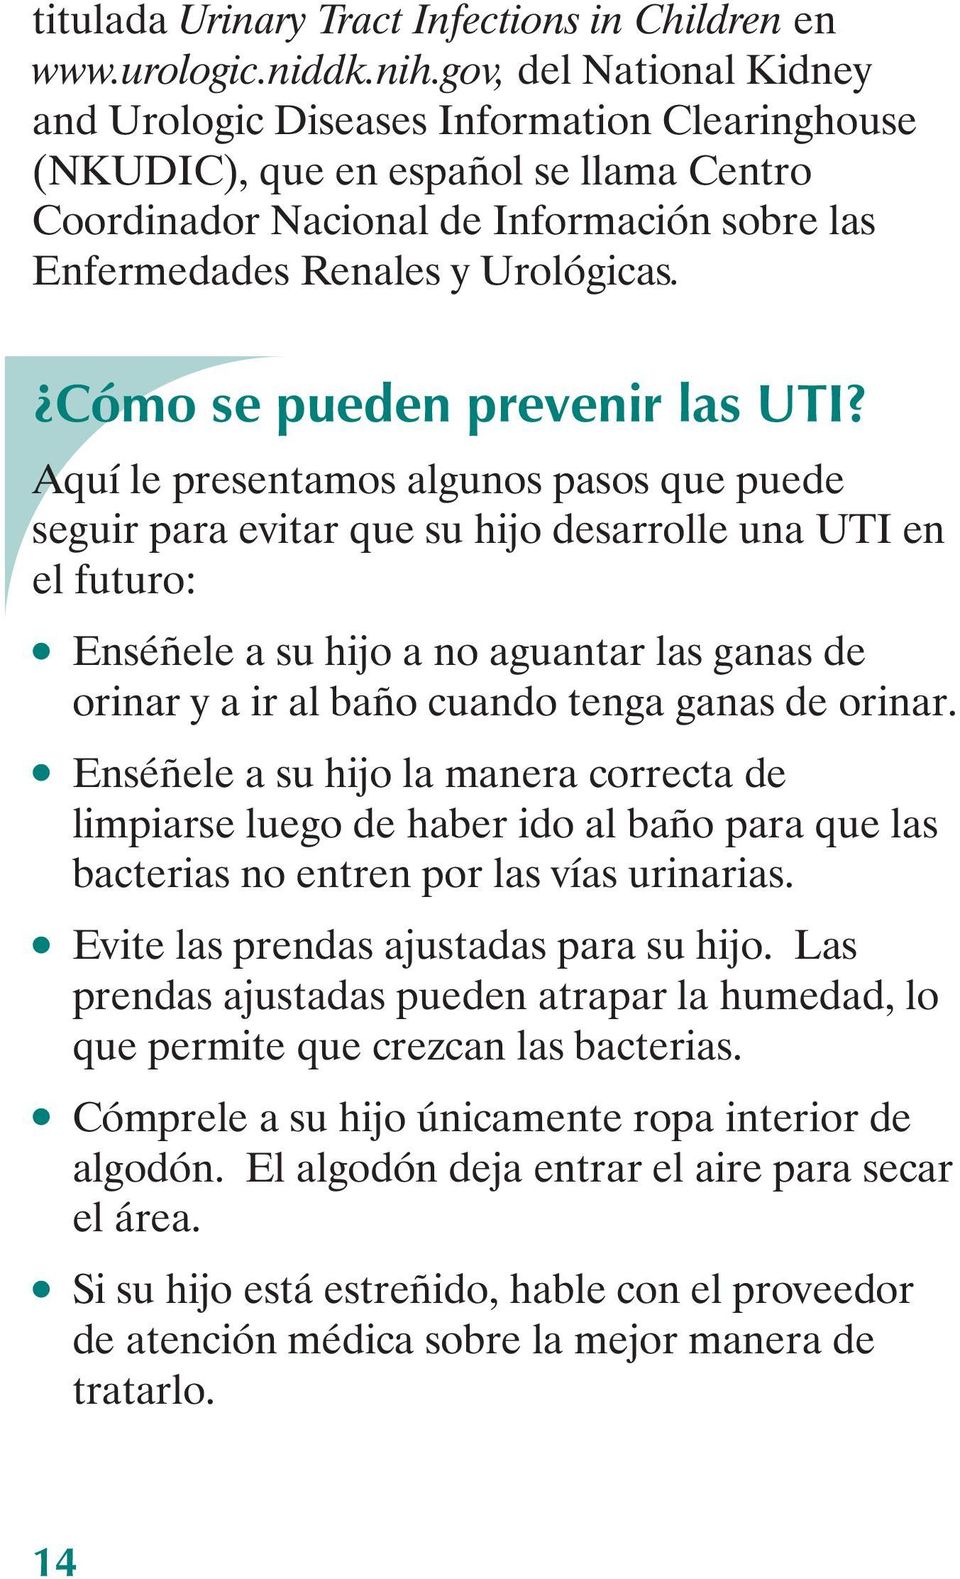 Cómo se pueden prevenir las UTI?